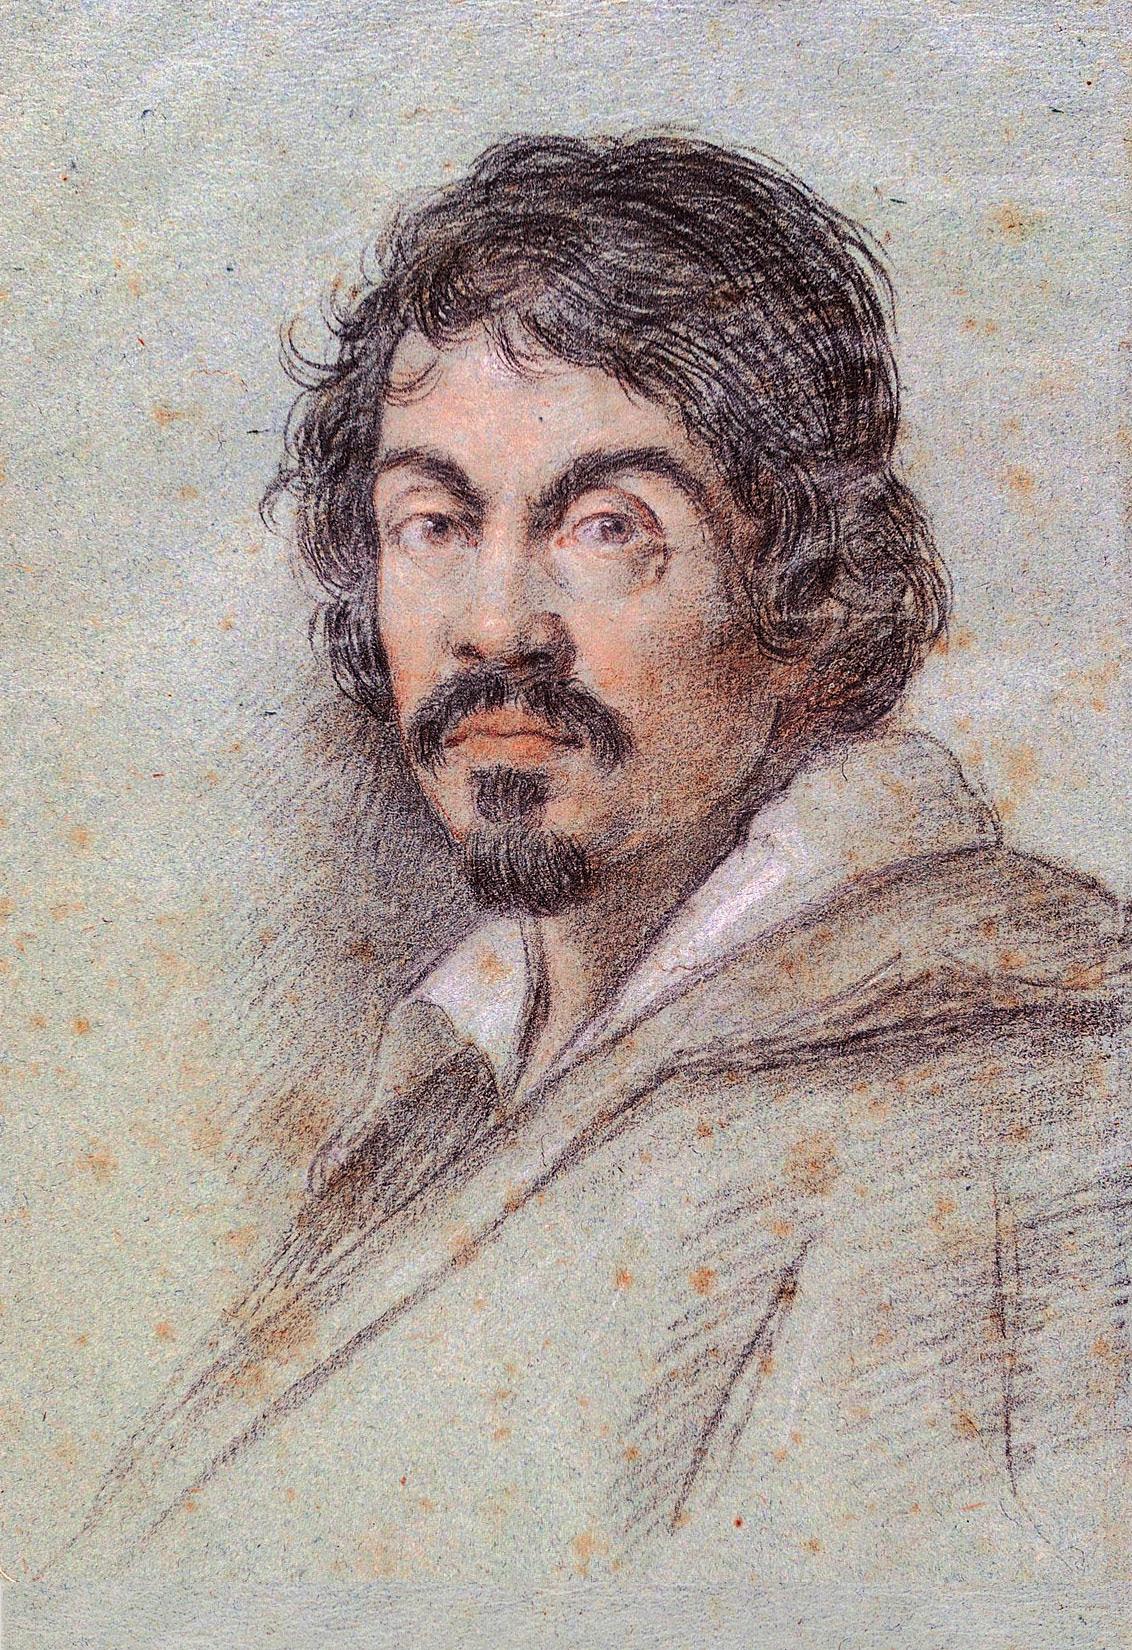 Portrait of the artist Caravaggio